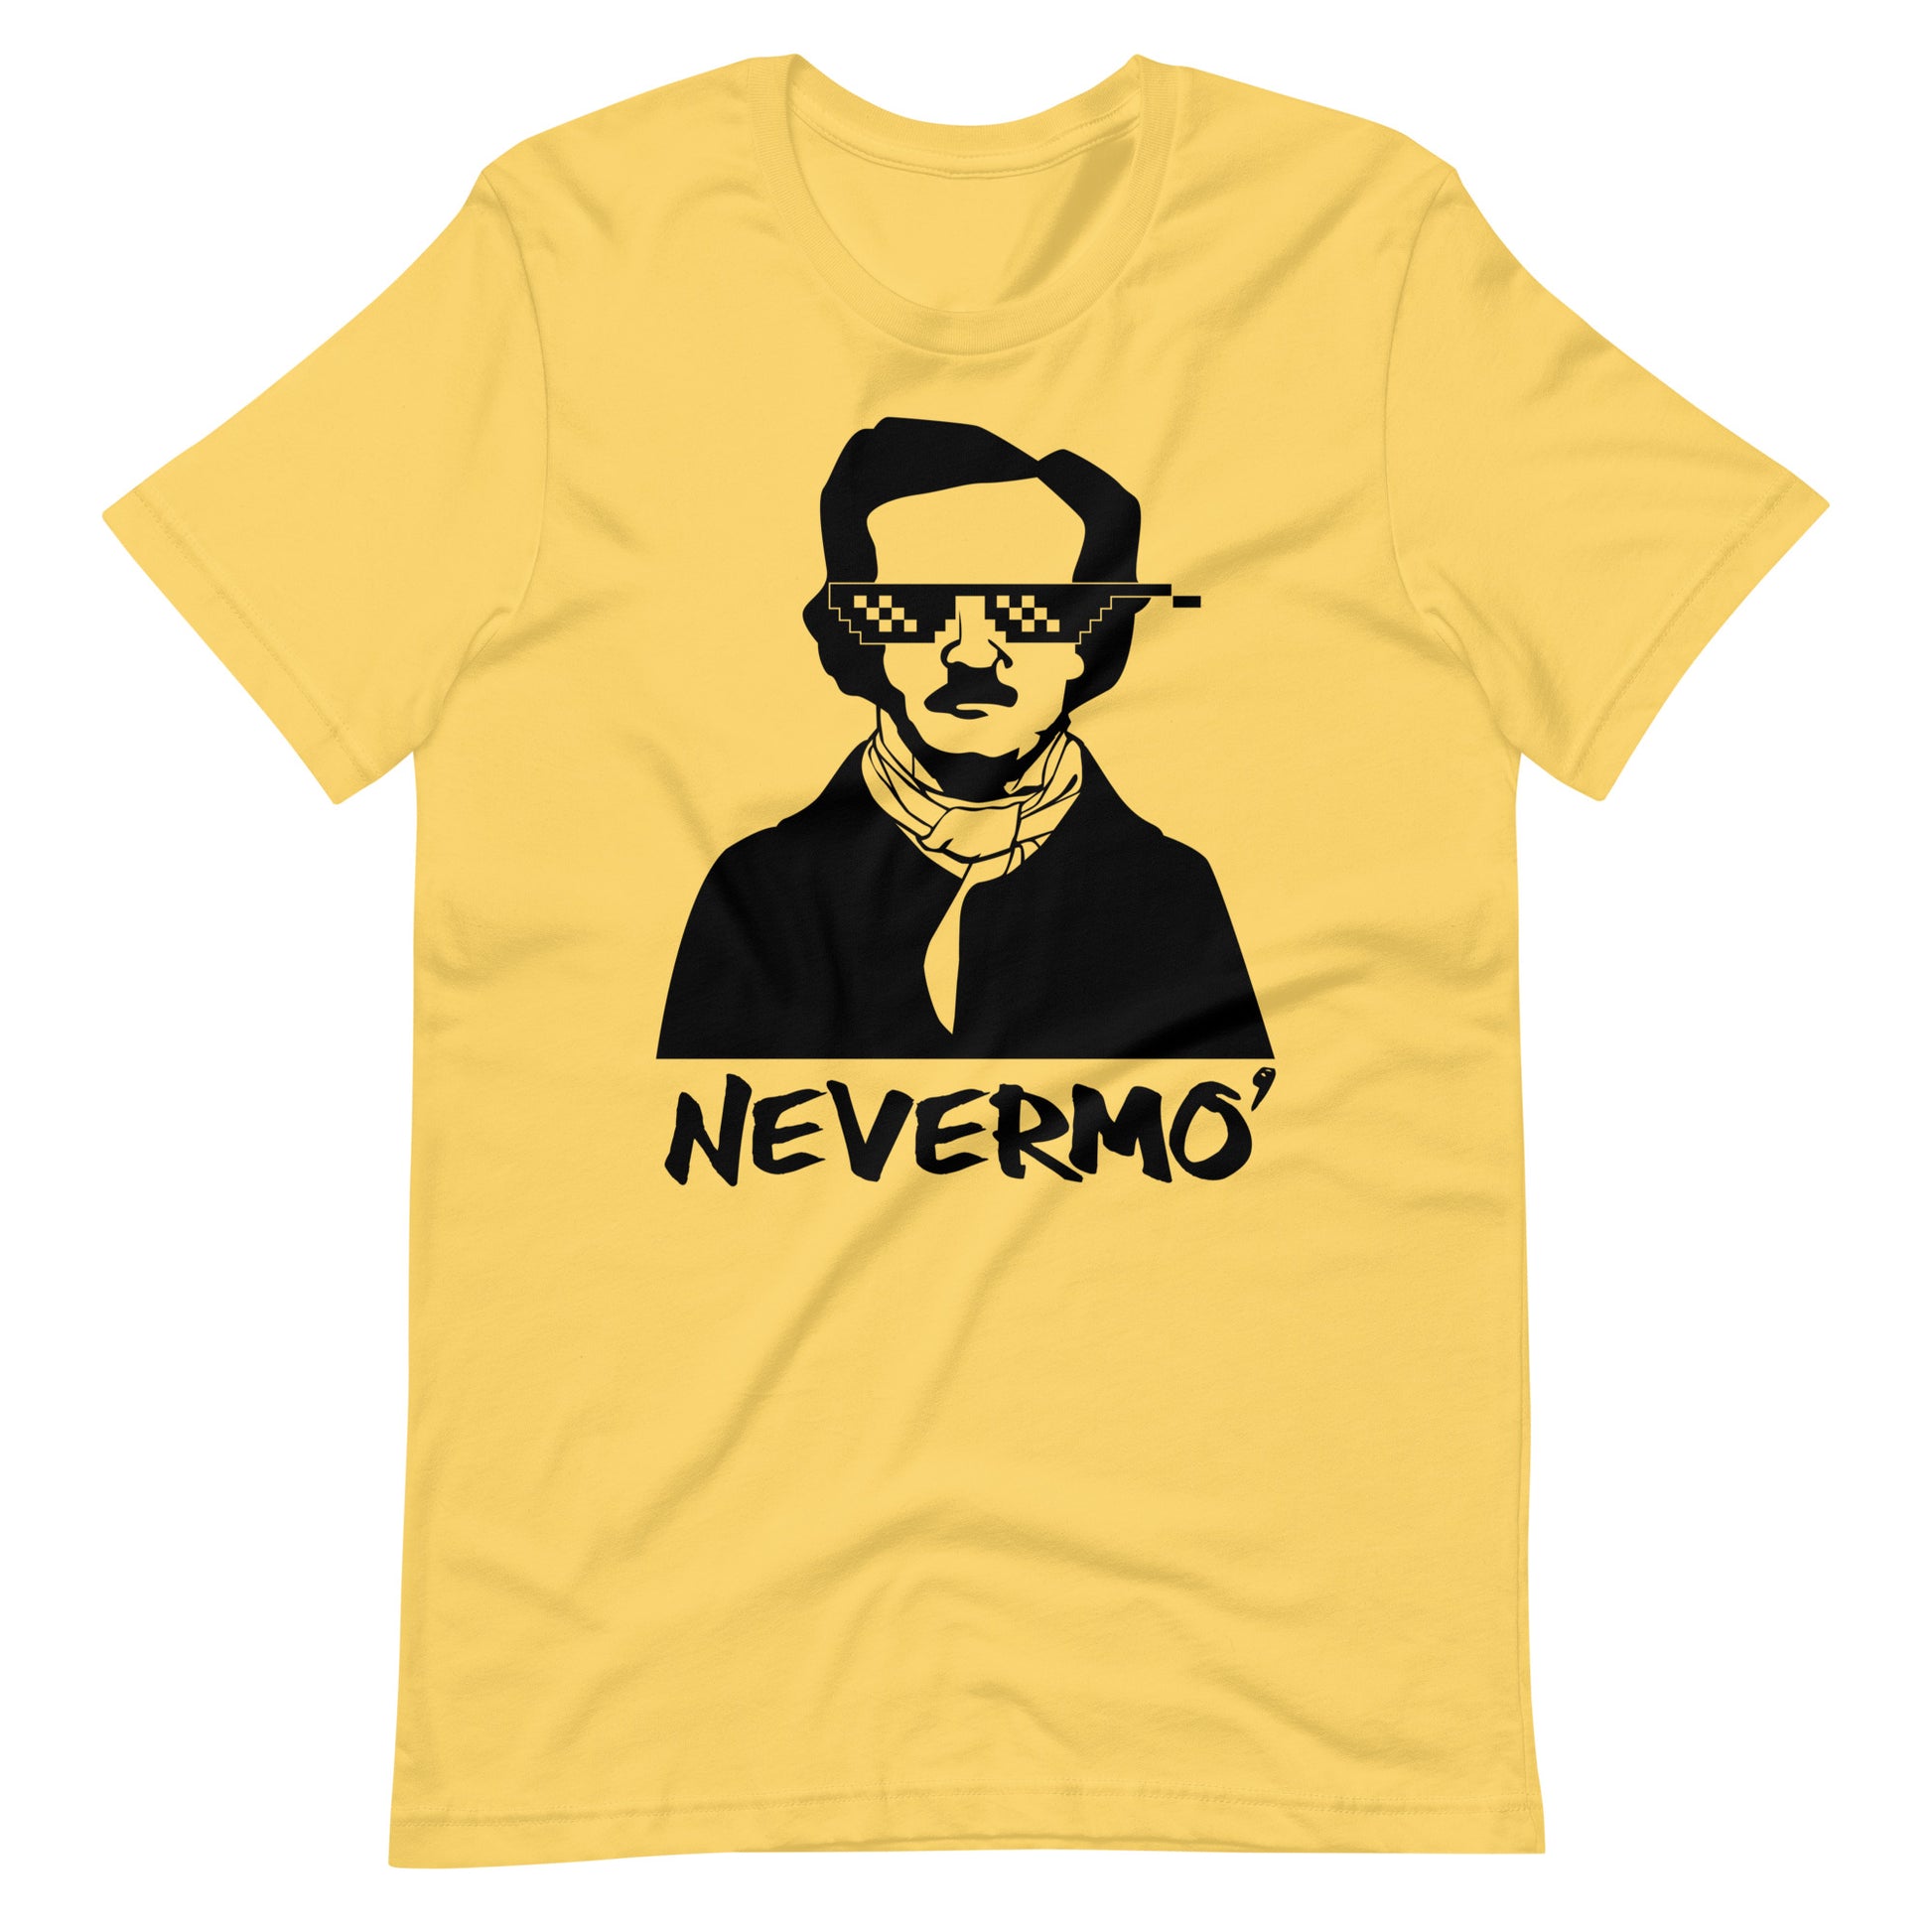 Women's Edgar Allan Poe "Nevermo" t-shirt - Yellow Front